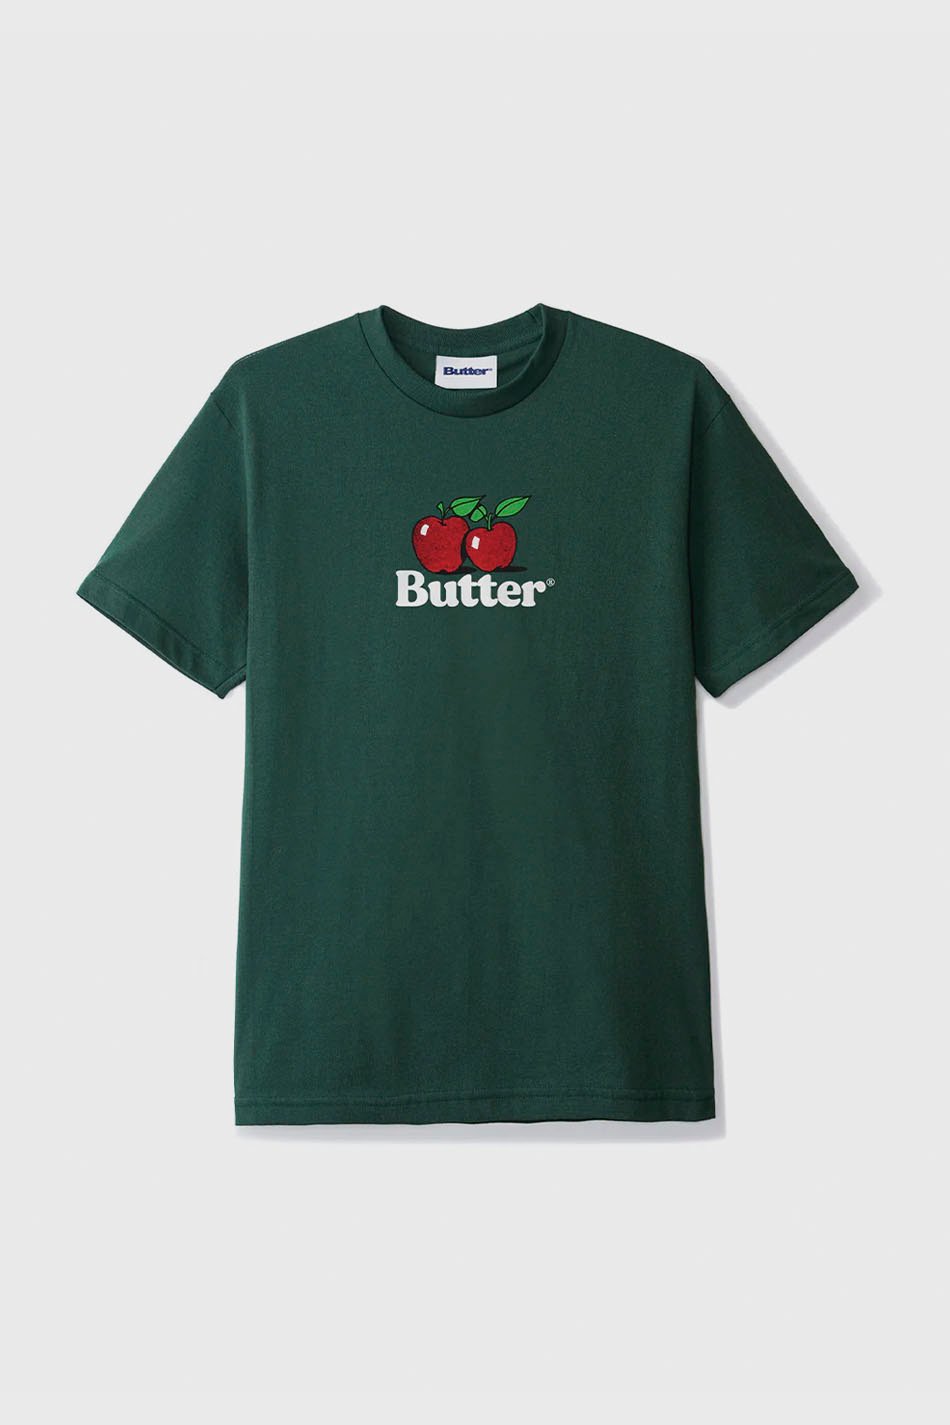 T-shirt Butter Goods Apples